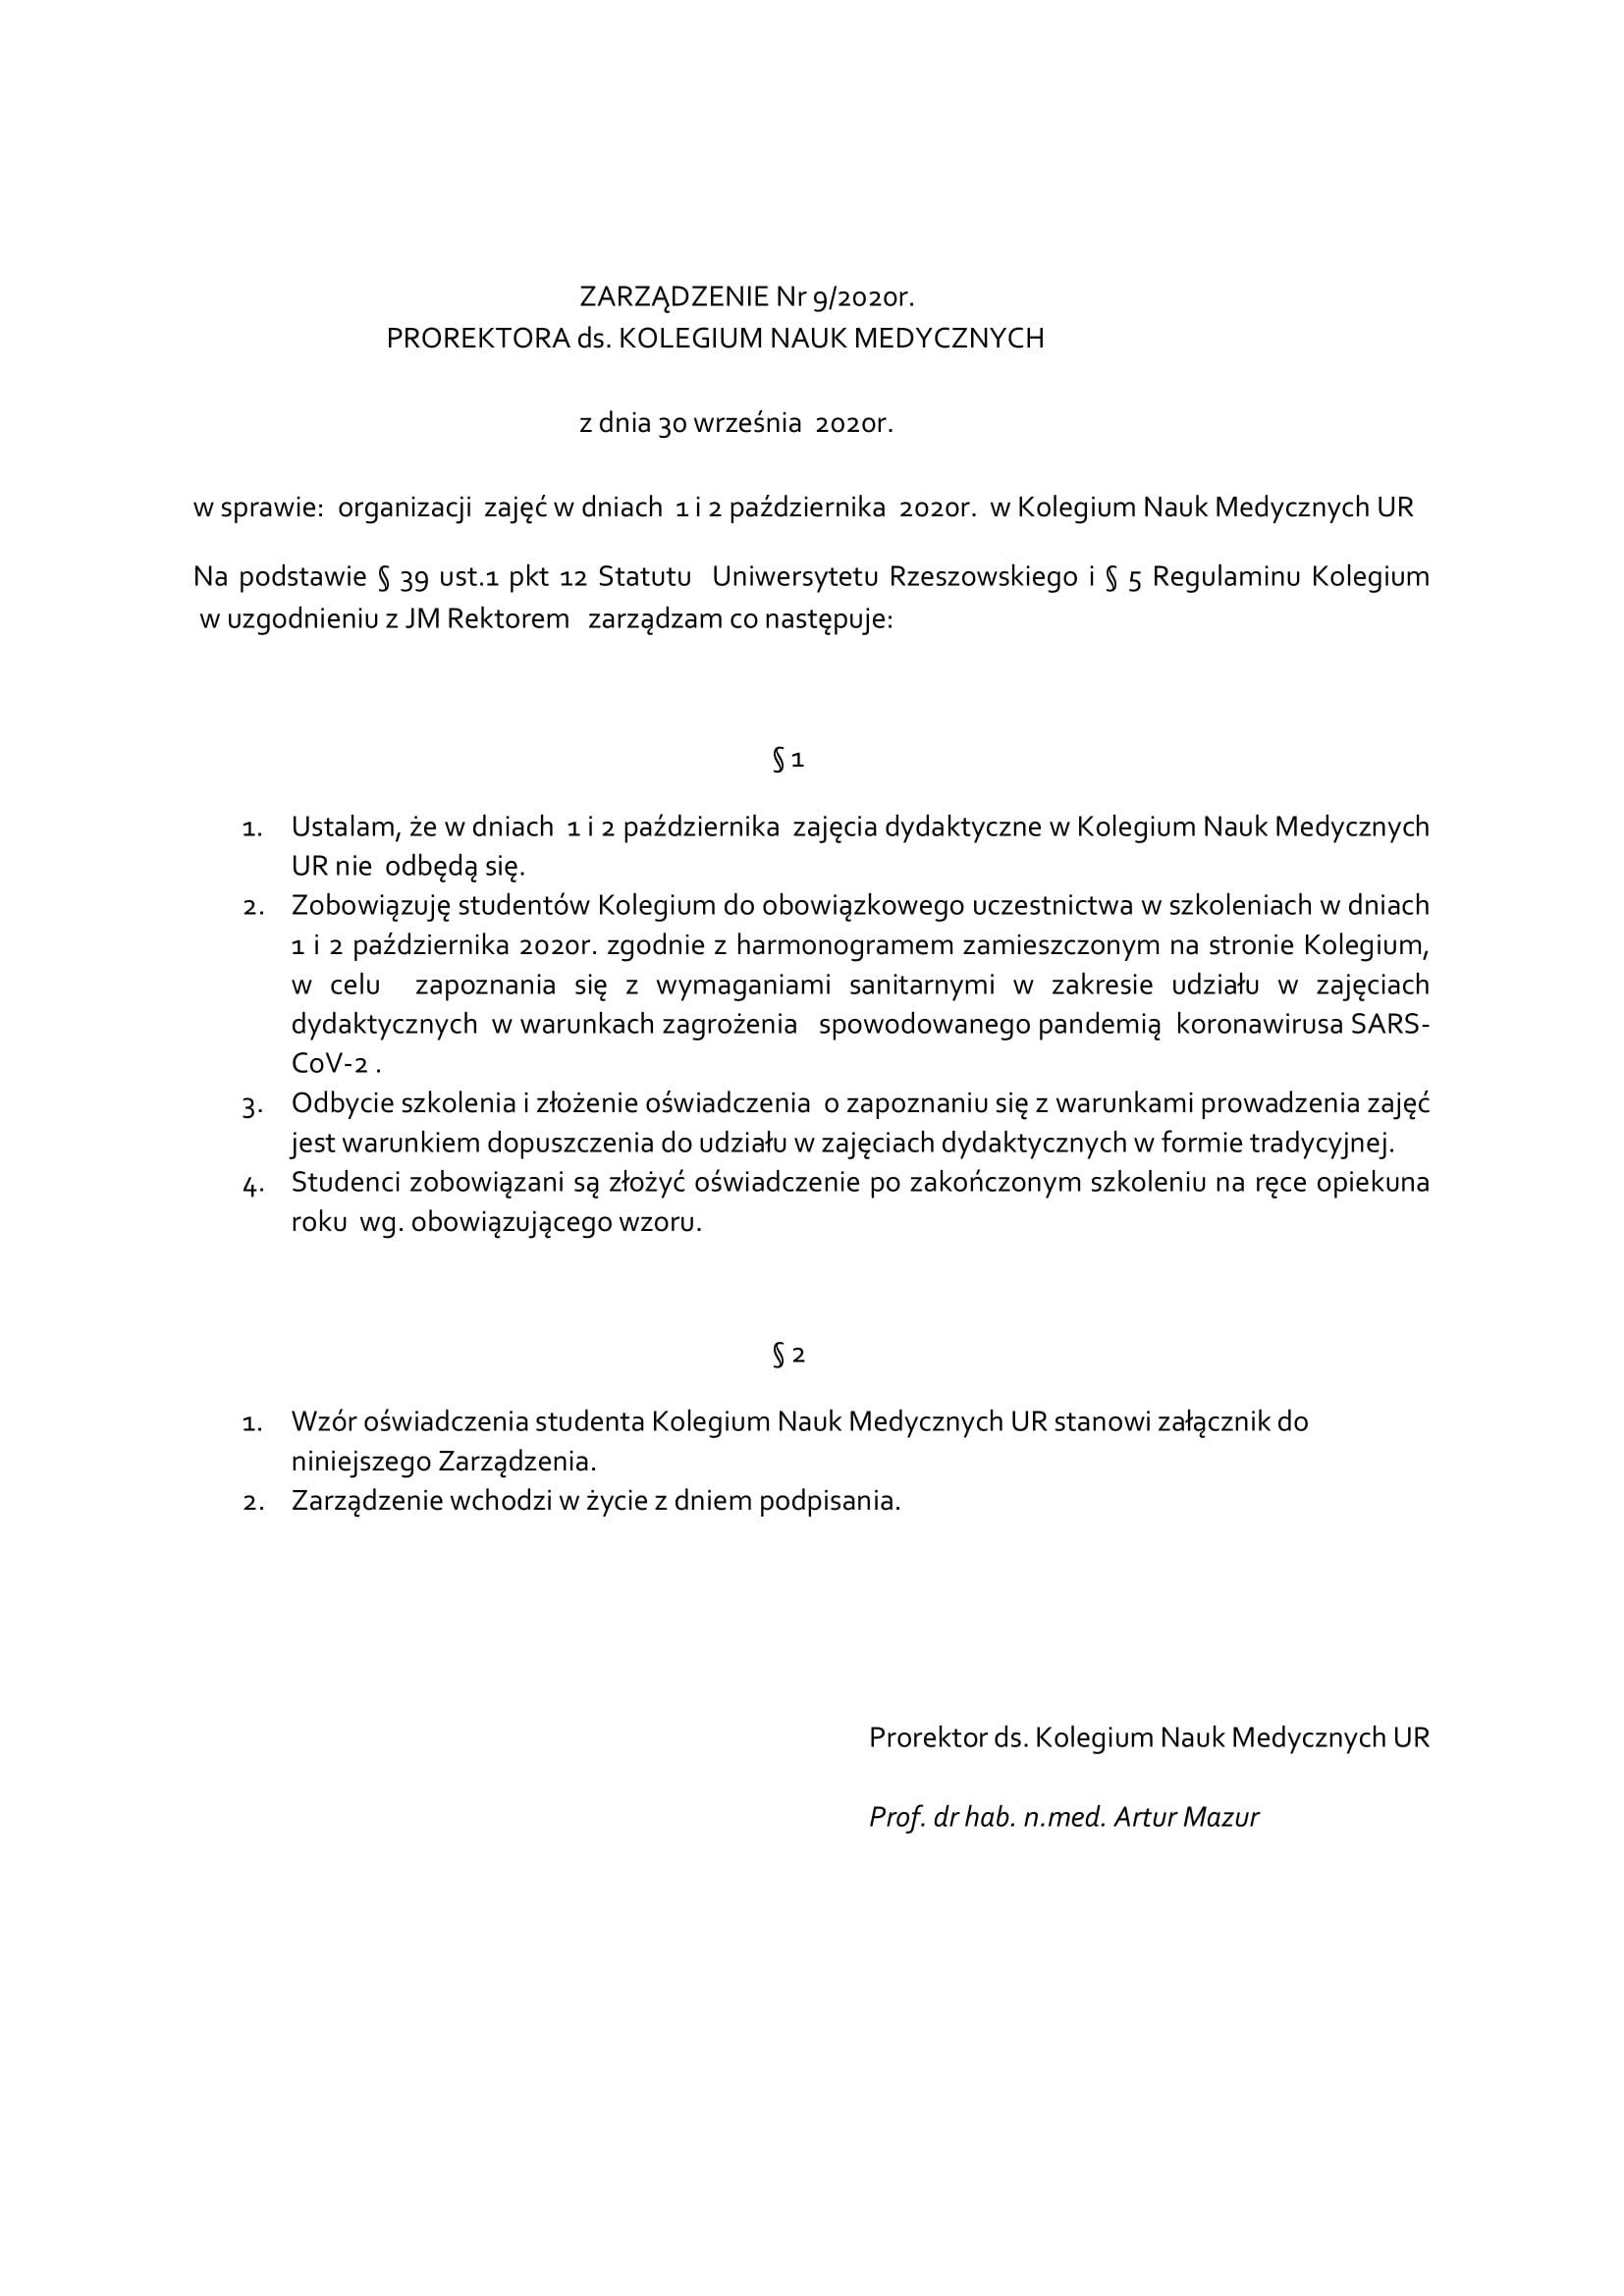 Zarządzenie Prorektora ds.KNM 1-2.10.2020-1.jpg [172.14 KB]